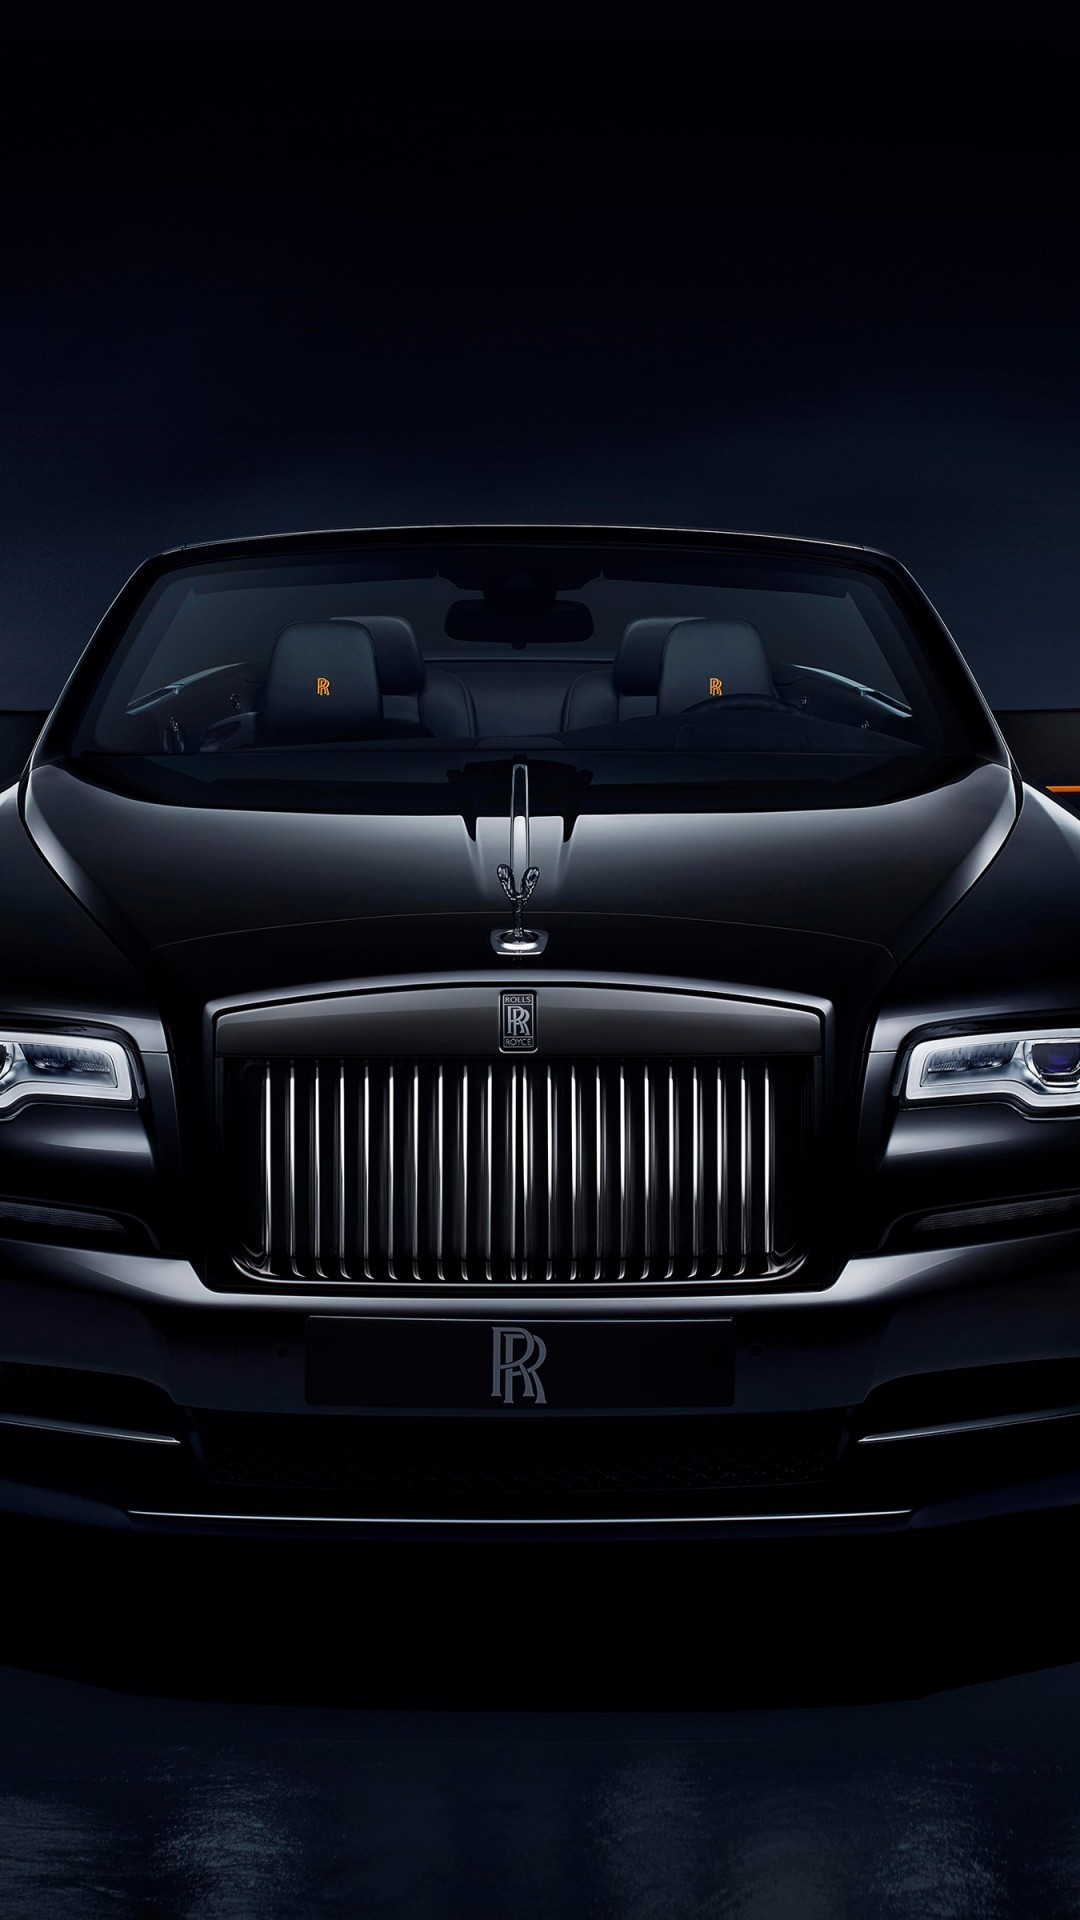 Rolls-royce, Front View, Black, Luxury, Cars - Rolls Royce Dawn Wallpaper 4k - HD Wallpaper 